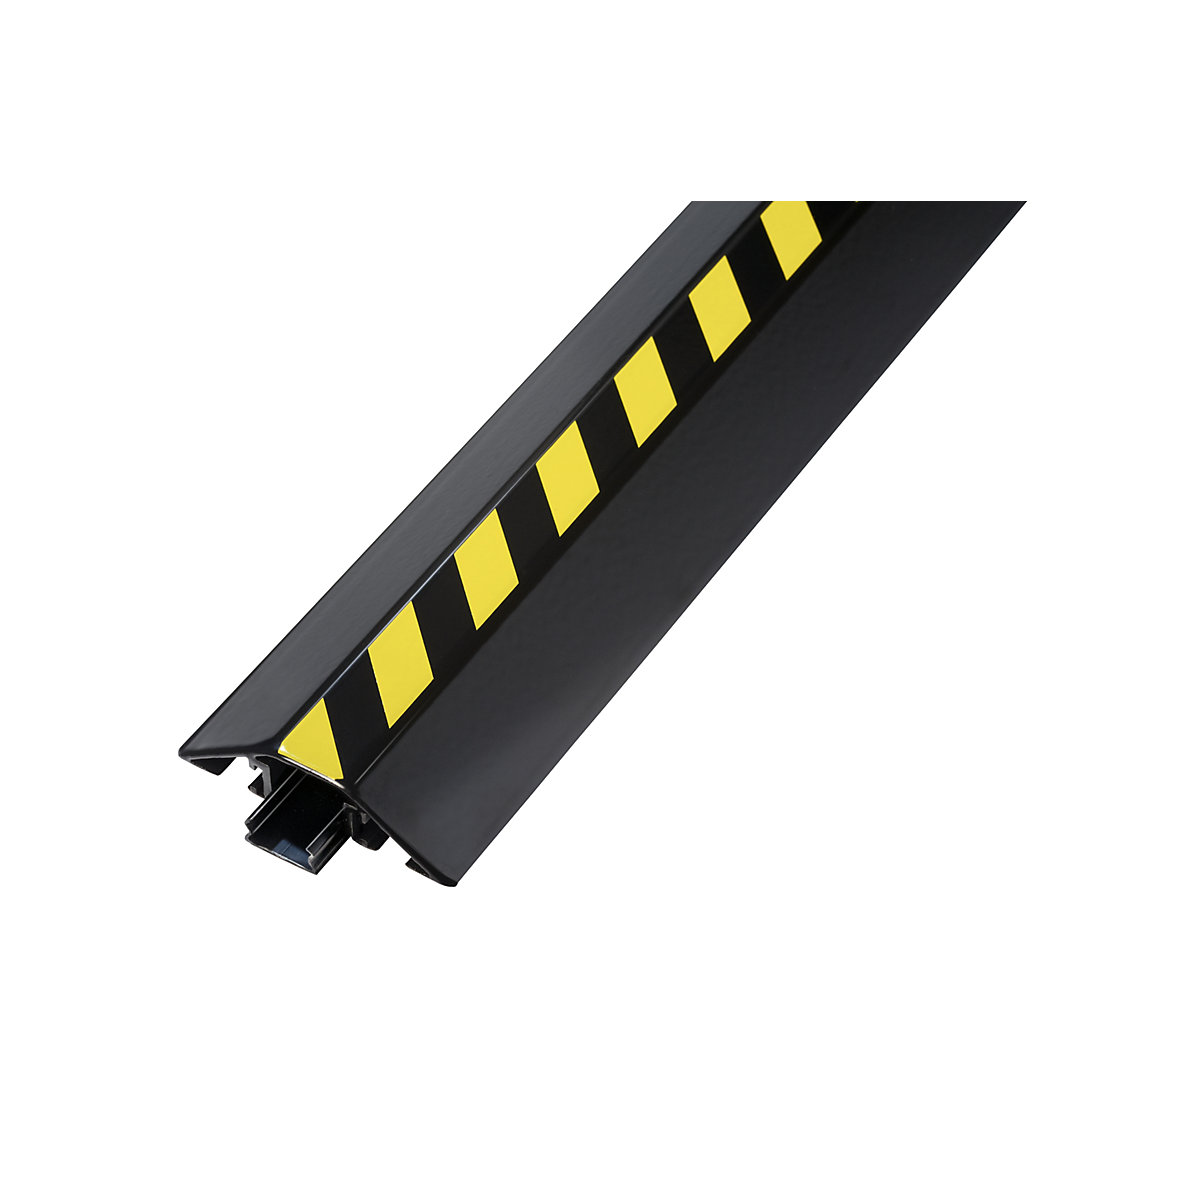 Aluminijski kabelski most, DxŠxV 2000 x 80 x 20 mm, u crnoj / žutoj boji, pak. 1 kom.-3